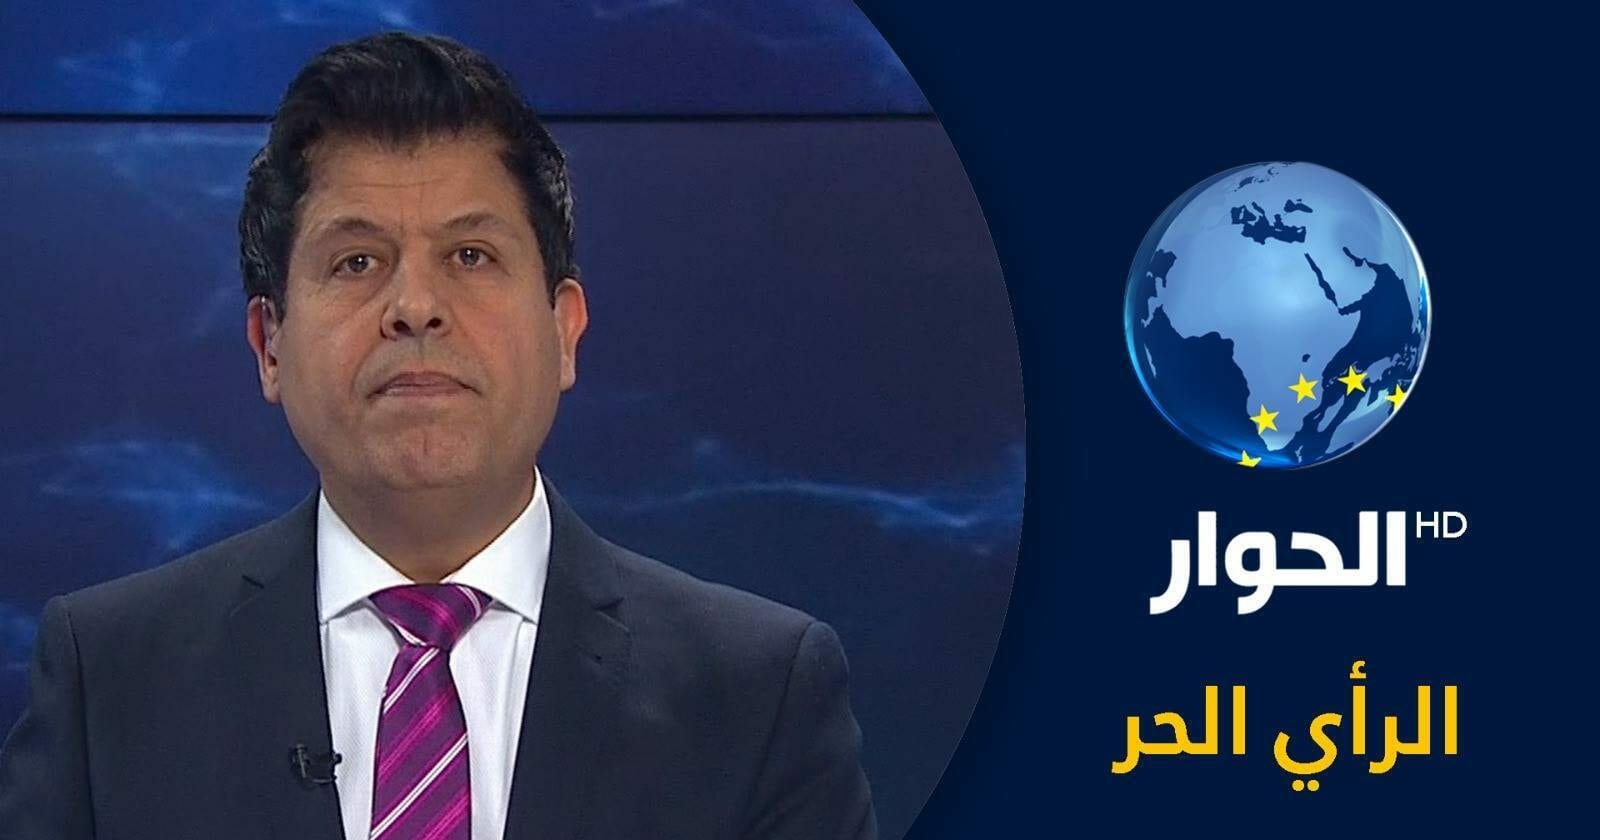 متصل سعودي يسبّ بألفاظ نابية المذيع التونسي صالح الأزرق ويتوّعد بقطع رأسه.. هكذا ردّ watanserb.com